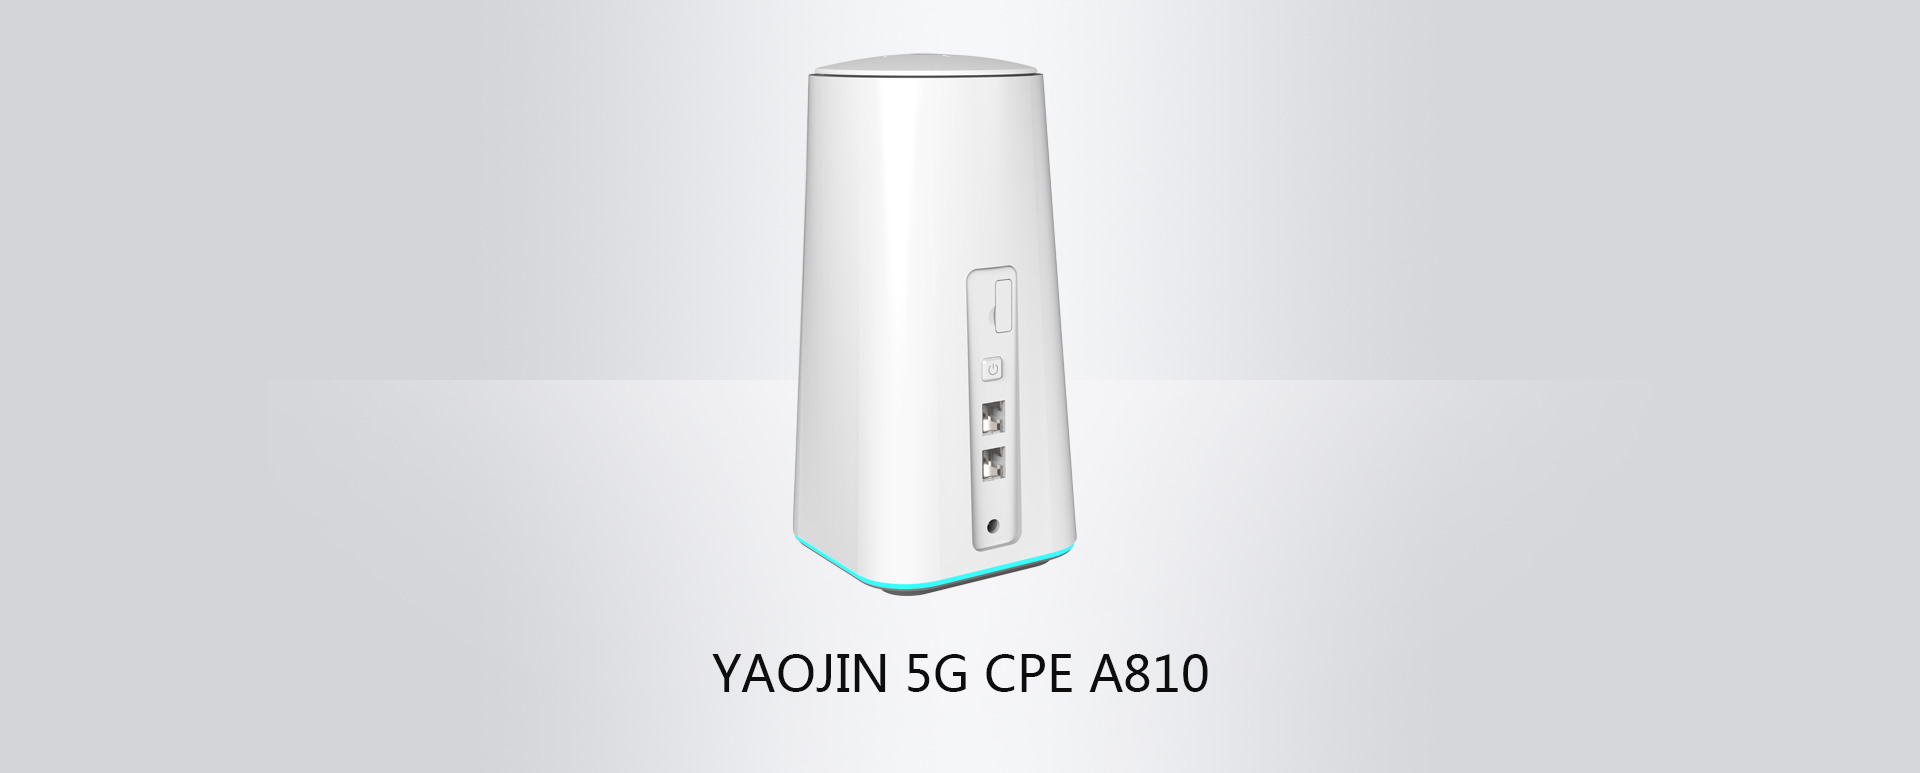 YAOJIN 5G CPE A810